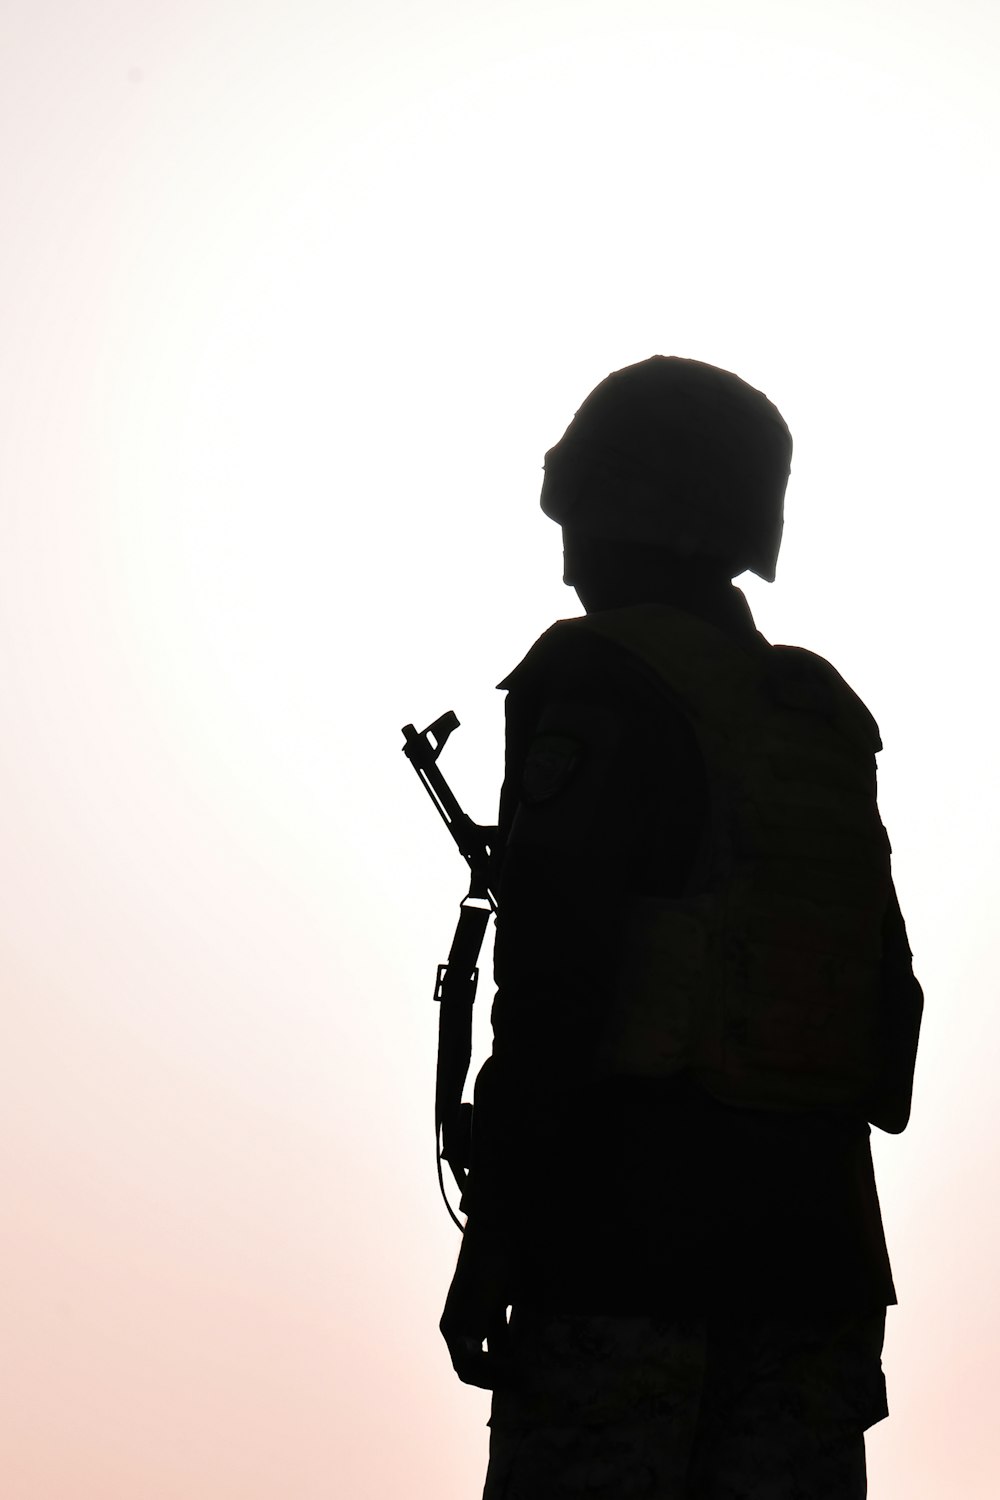 Die Silhouette eines Soldaten, der ein Gewehr hält